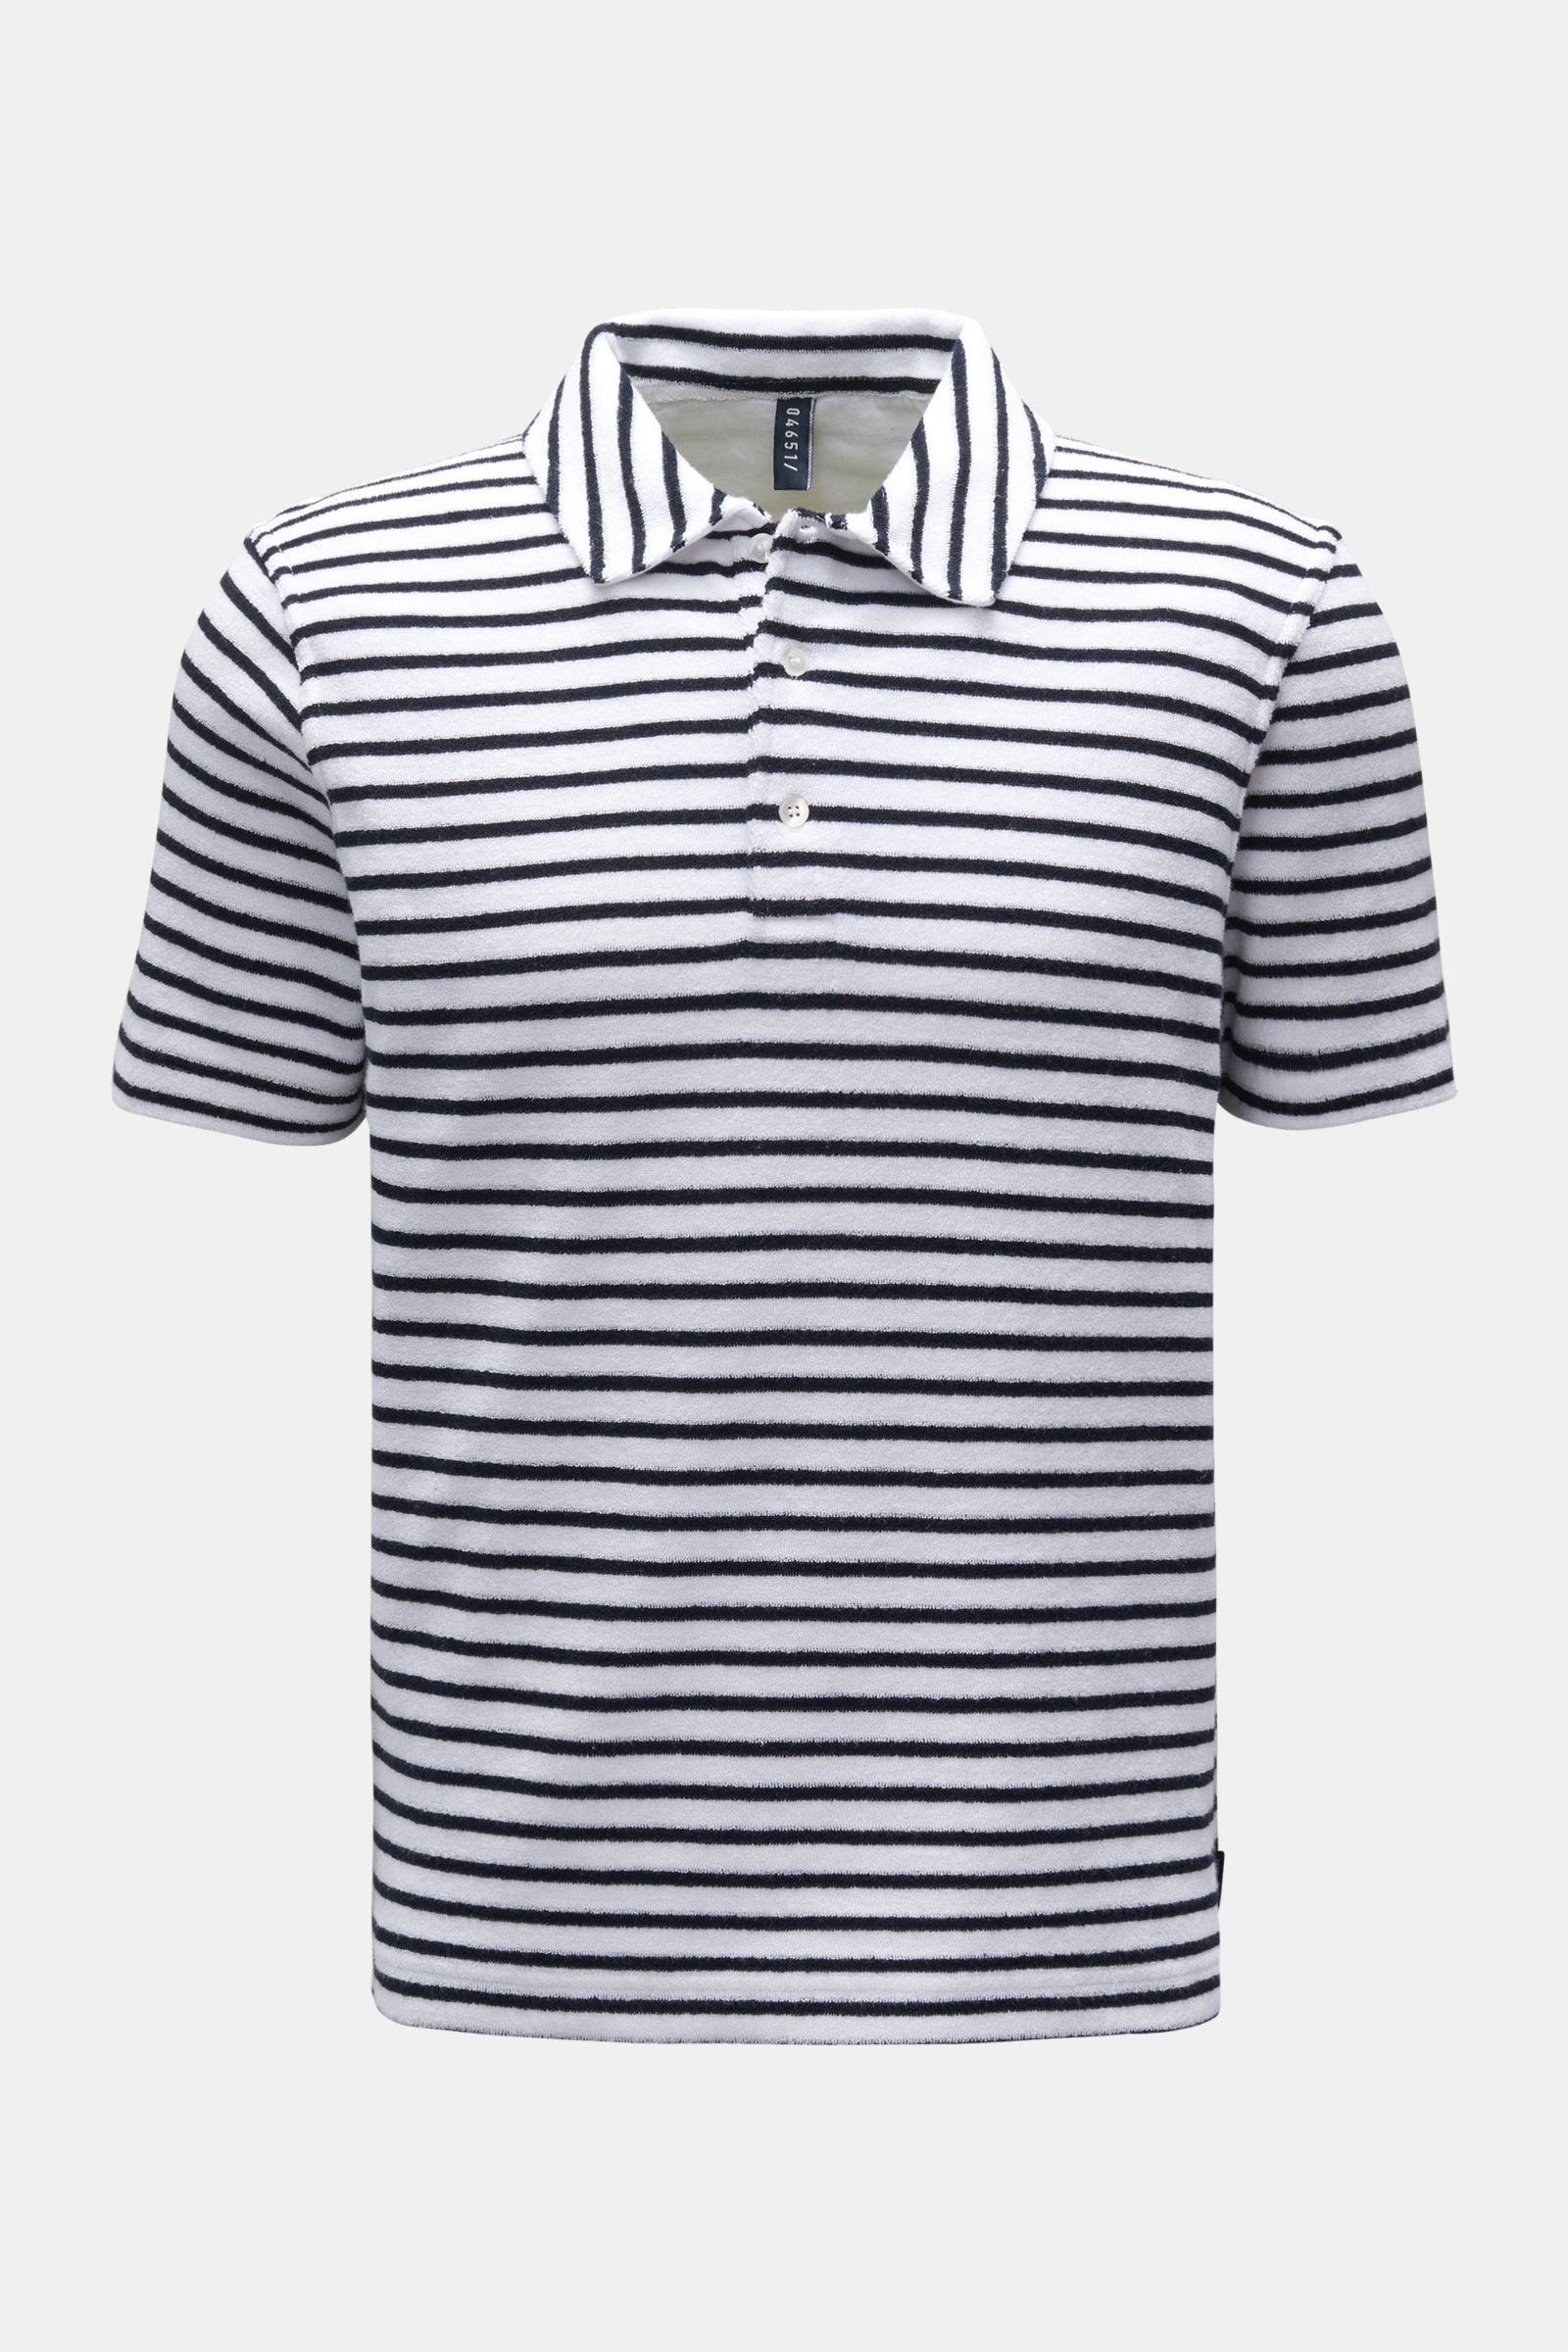 Terry polo shirt 'Terry Stripe Polo' navy/white striped